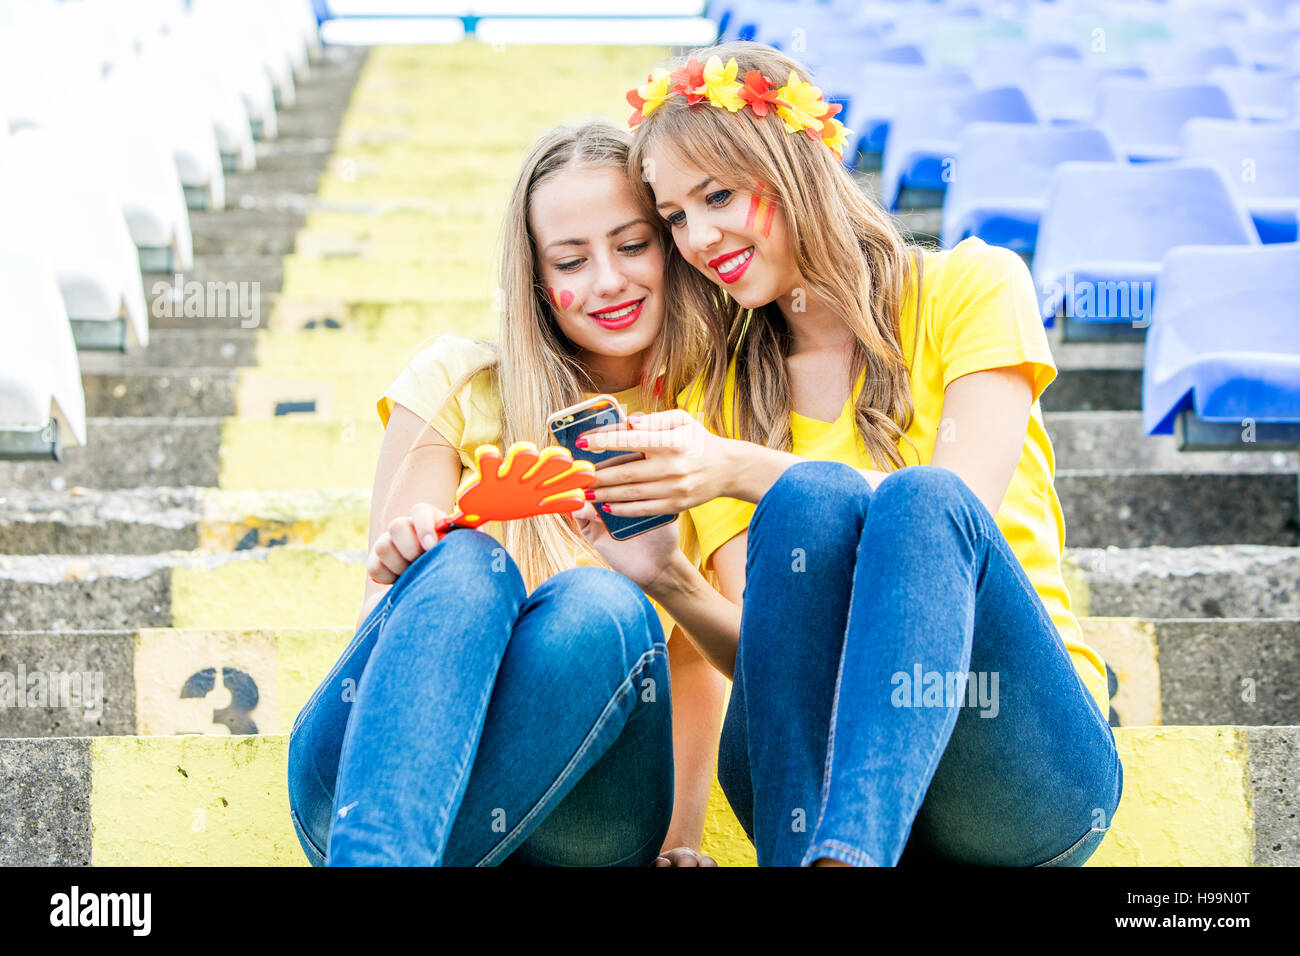 Zwei weibliche Fußball-Fans im Stadion Text-messaging Stockfoto